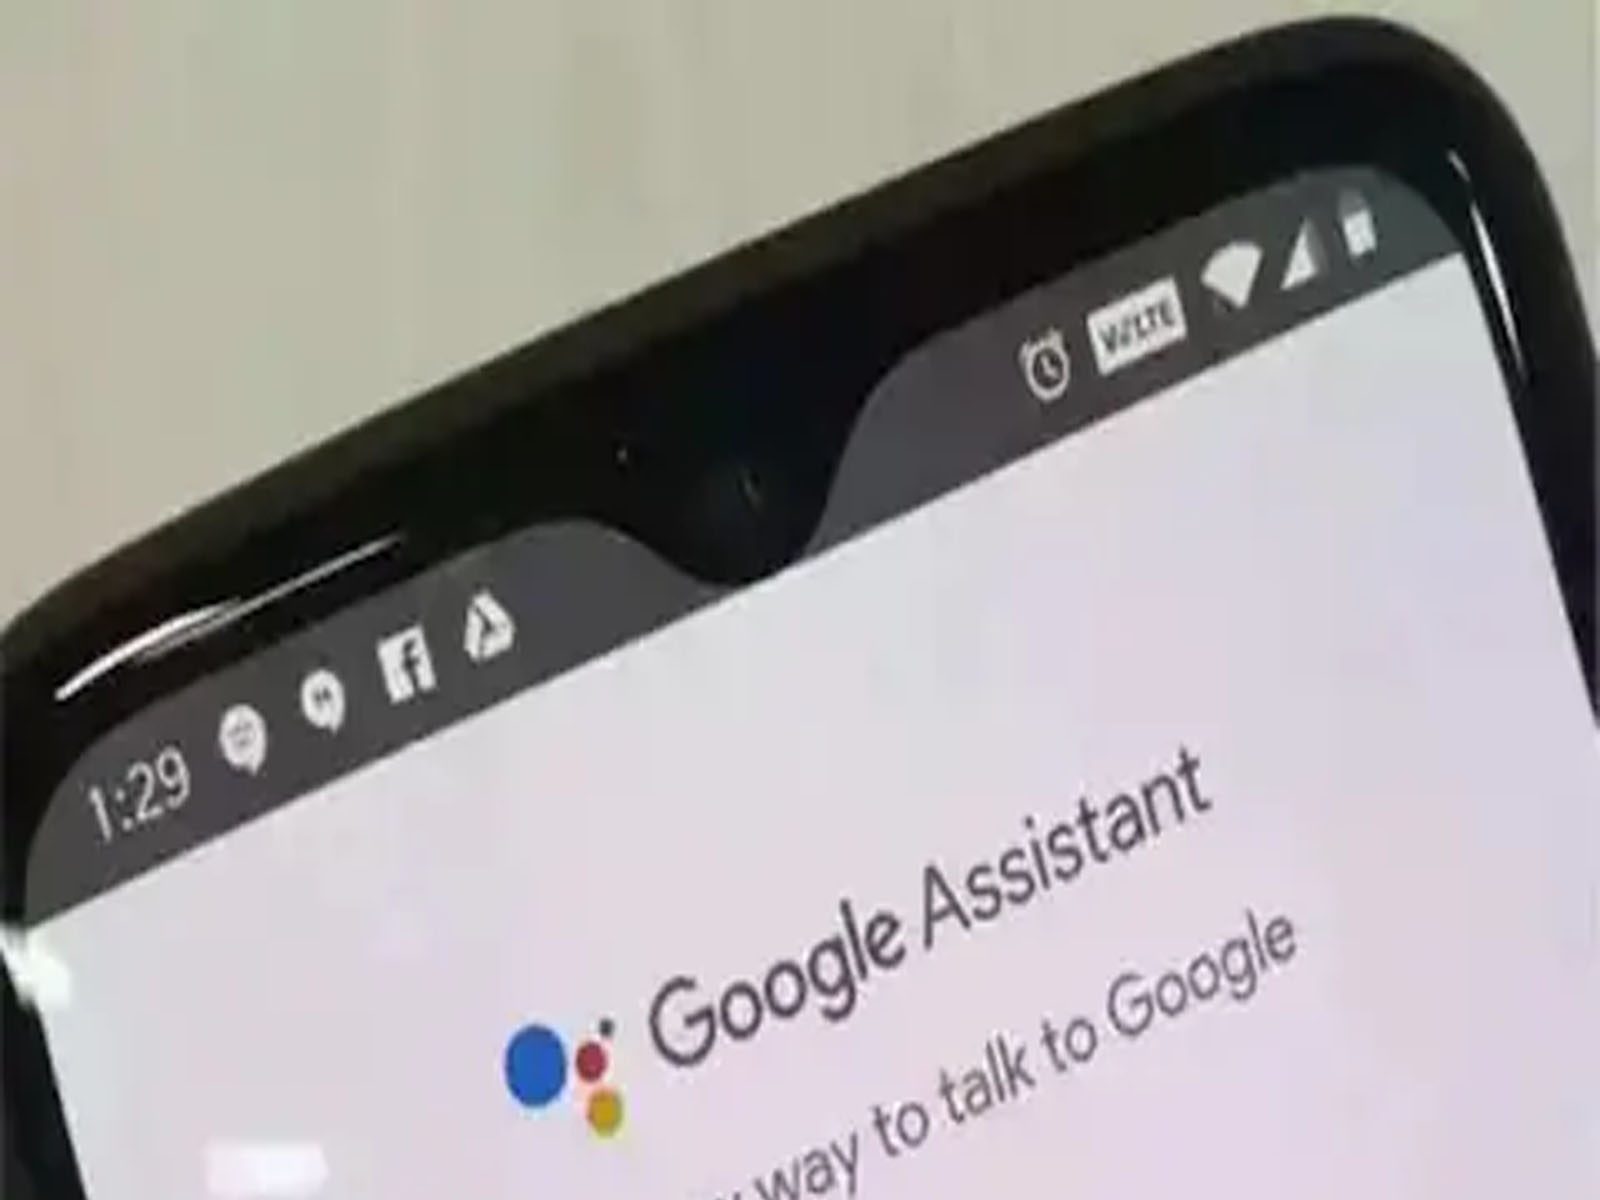 ਹੋਰ ਸਮਾਰਟ ਬਣ ਰਿਹਾ ਹੈ Google Assistant, ਜਾਣੋ ਹੋਣ ਵਾਲੇ ਬਦਲਾਅ